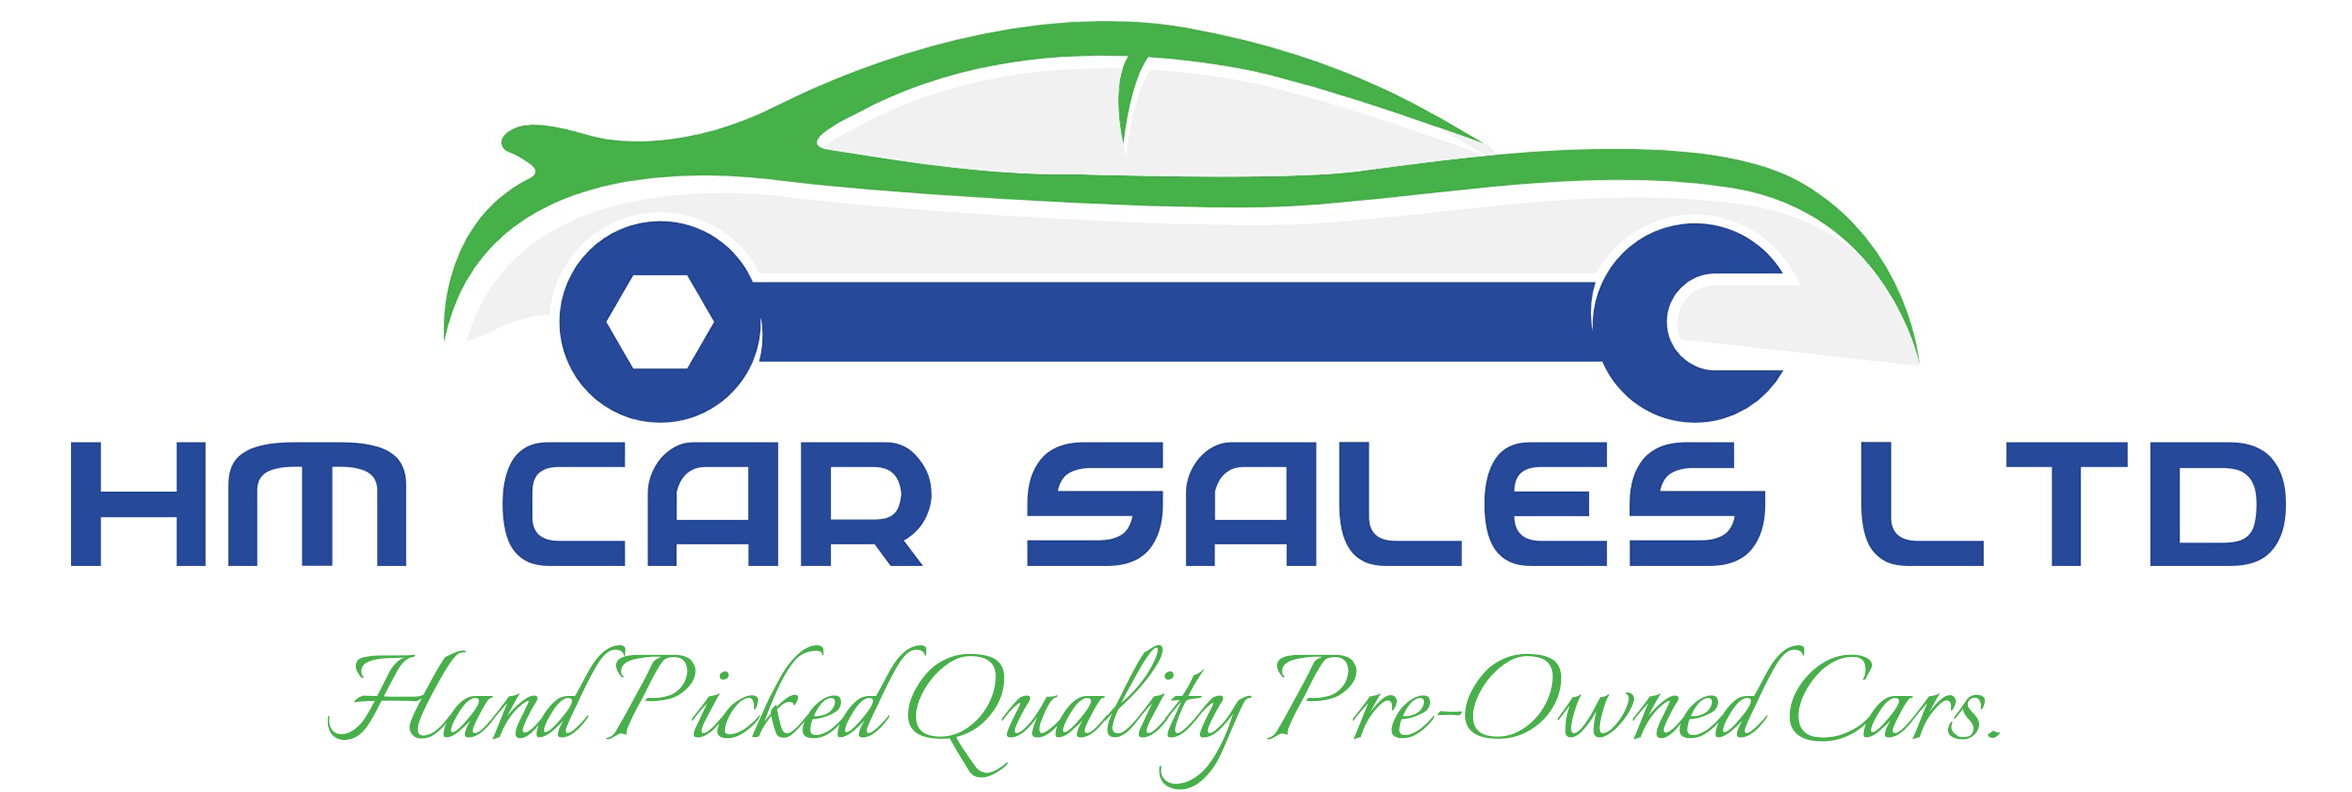 Used Car Sales Logo - Used cars in Tiverton, Devon. HM Car Sales Ltd